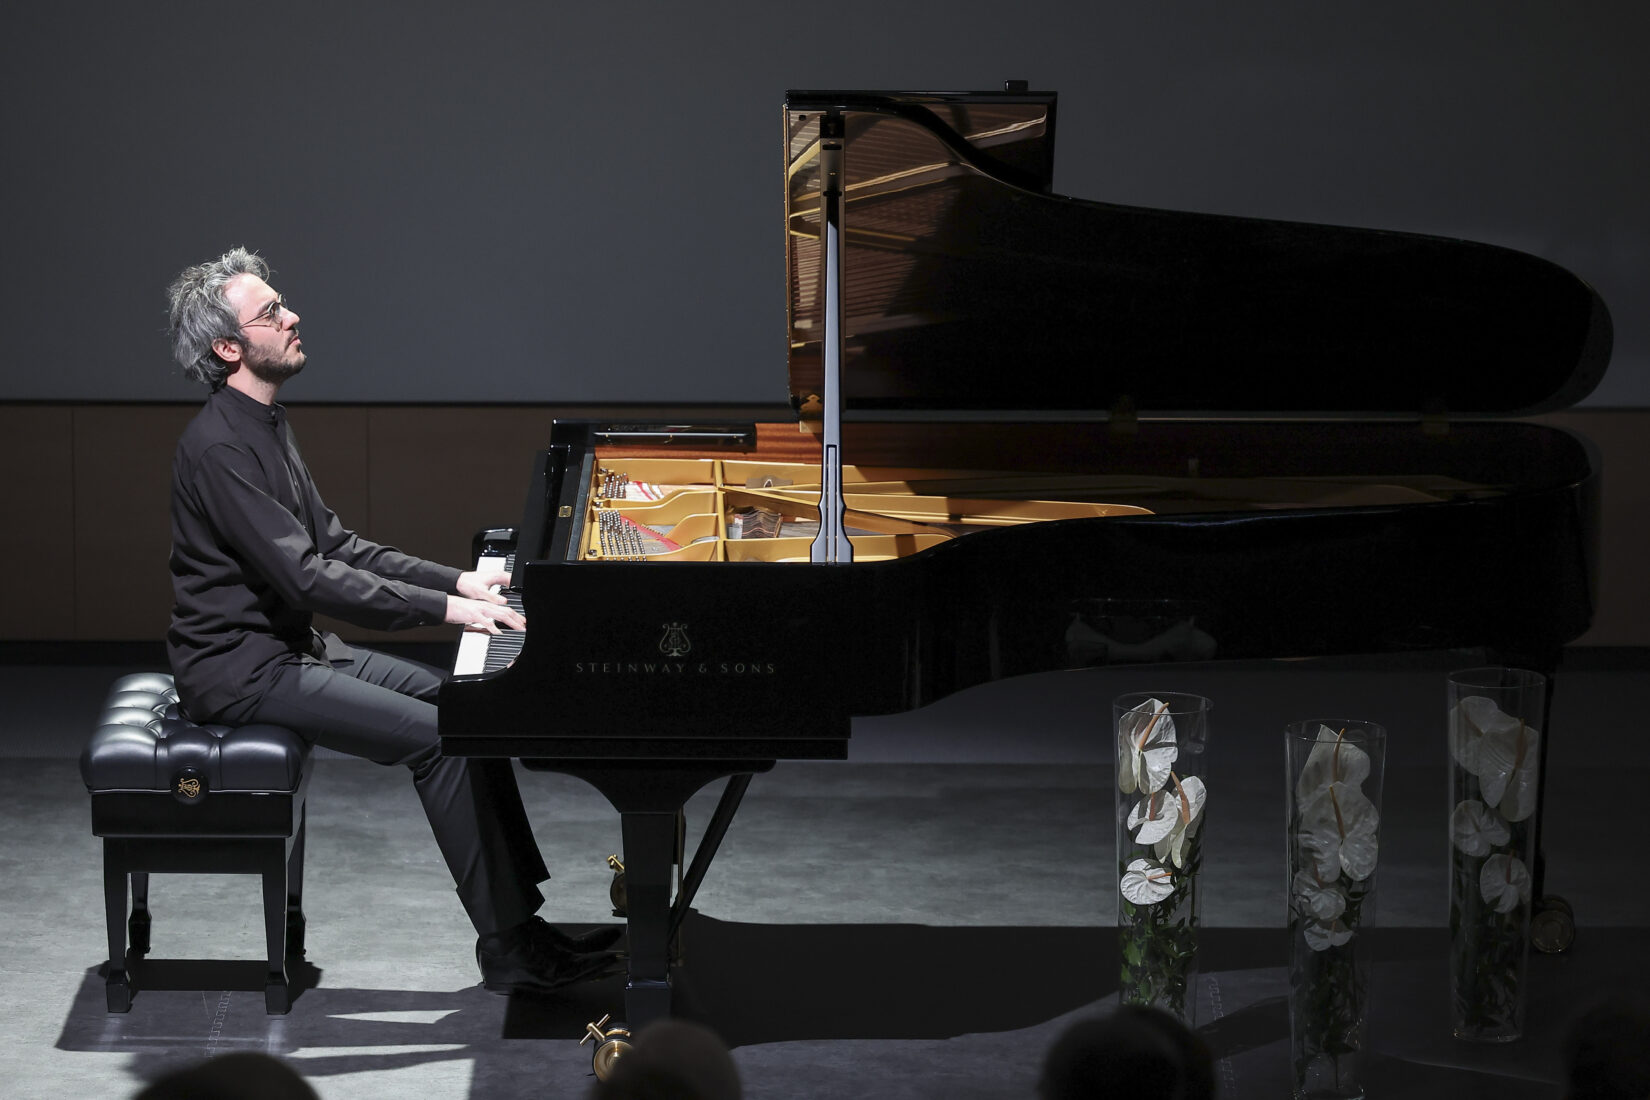 V Krki ob jubileju gostili mednarodno priznanega pianista Alexandra Gadjieva